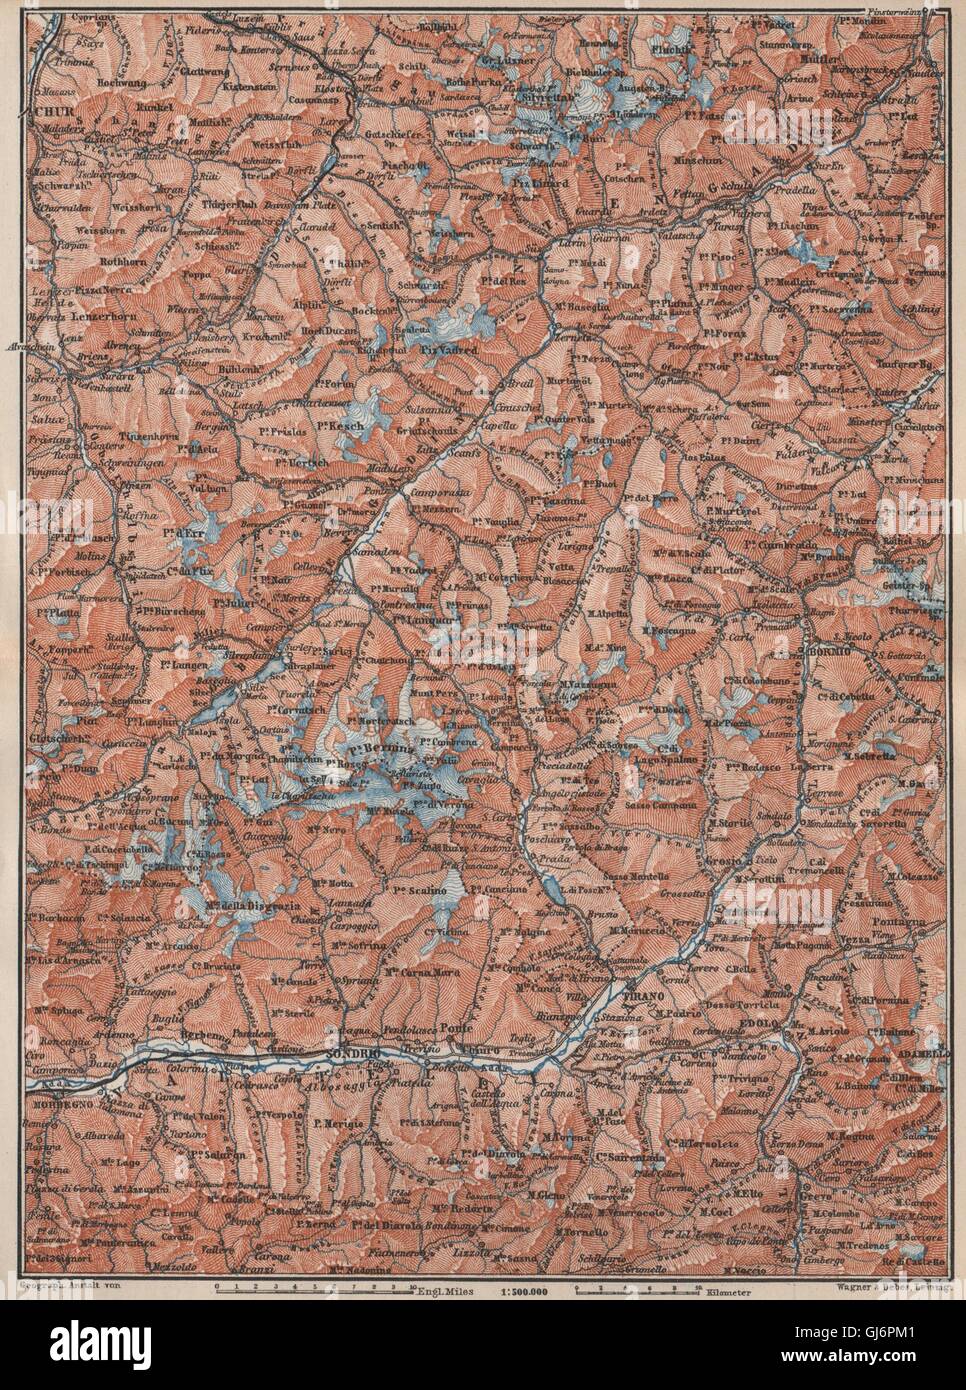 ENGADINE/VAL TELLINA. Davos Arosa Sils Bormio Livigno Sondrio Chur, 1897 map Stock Photo